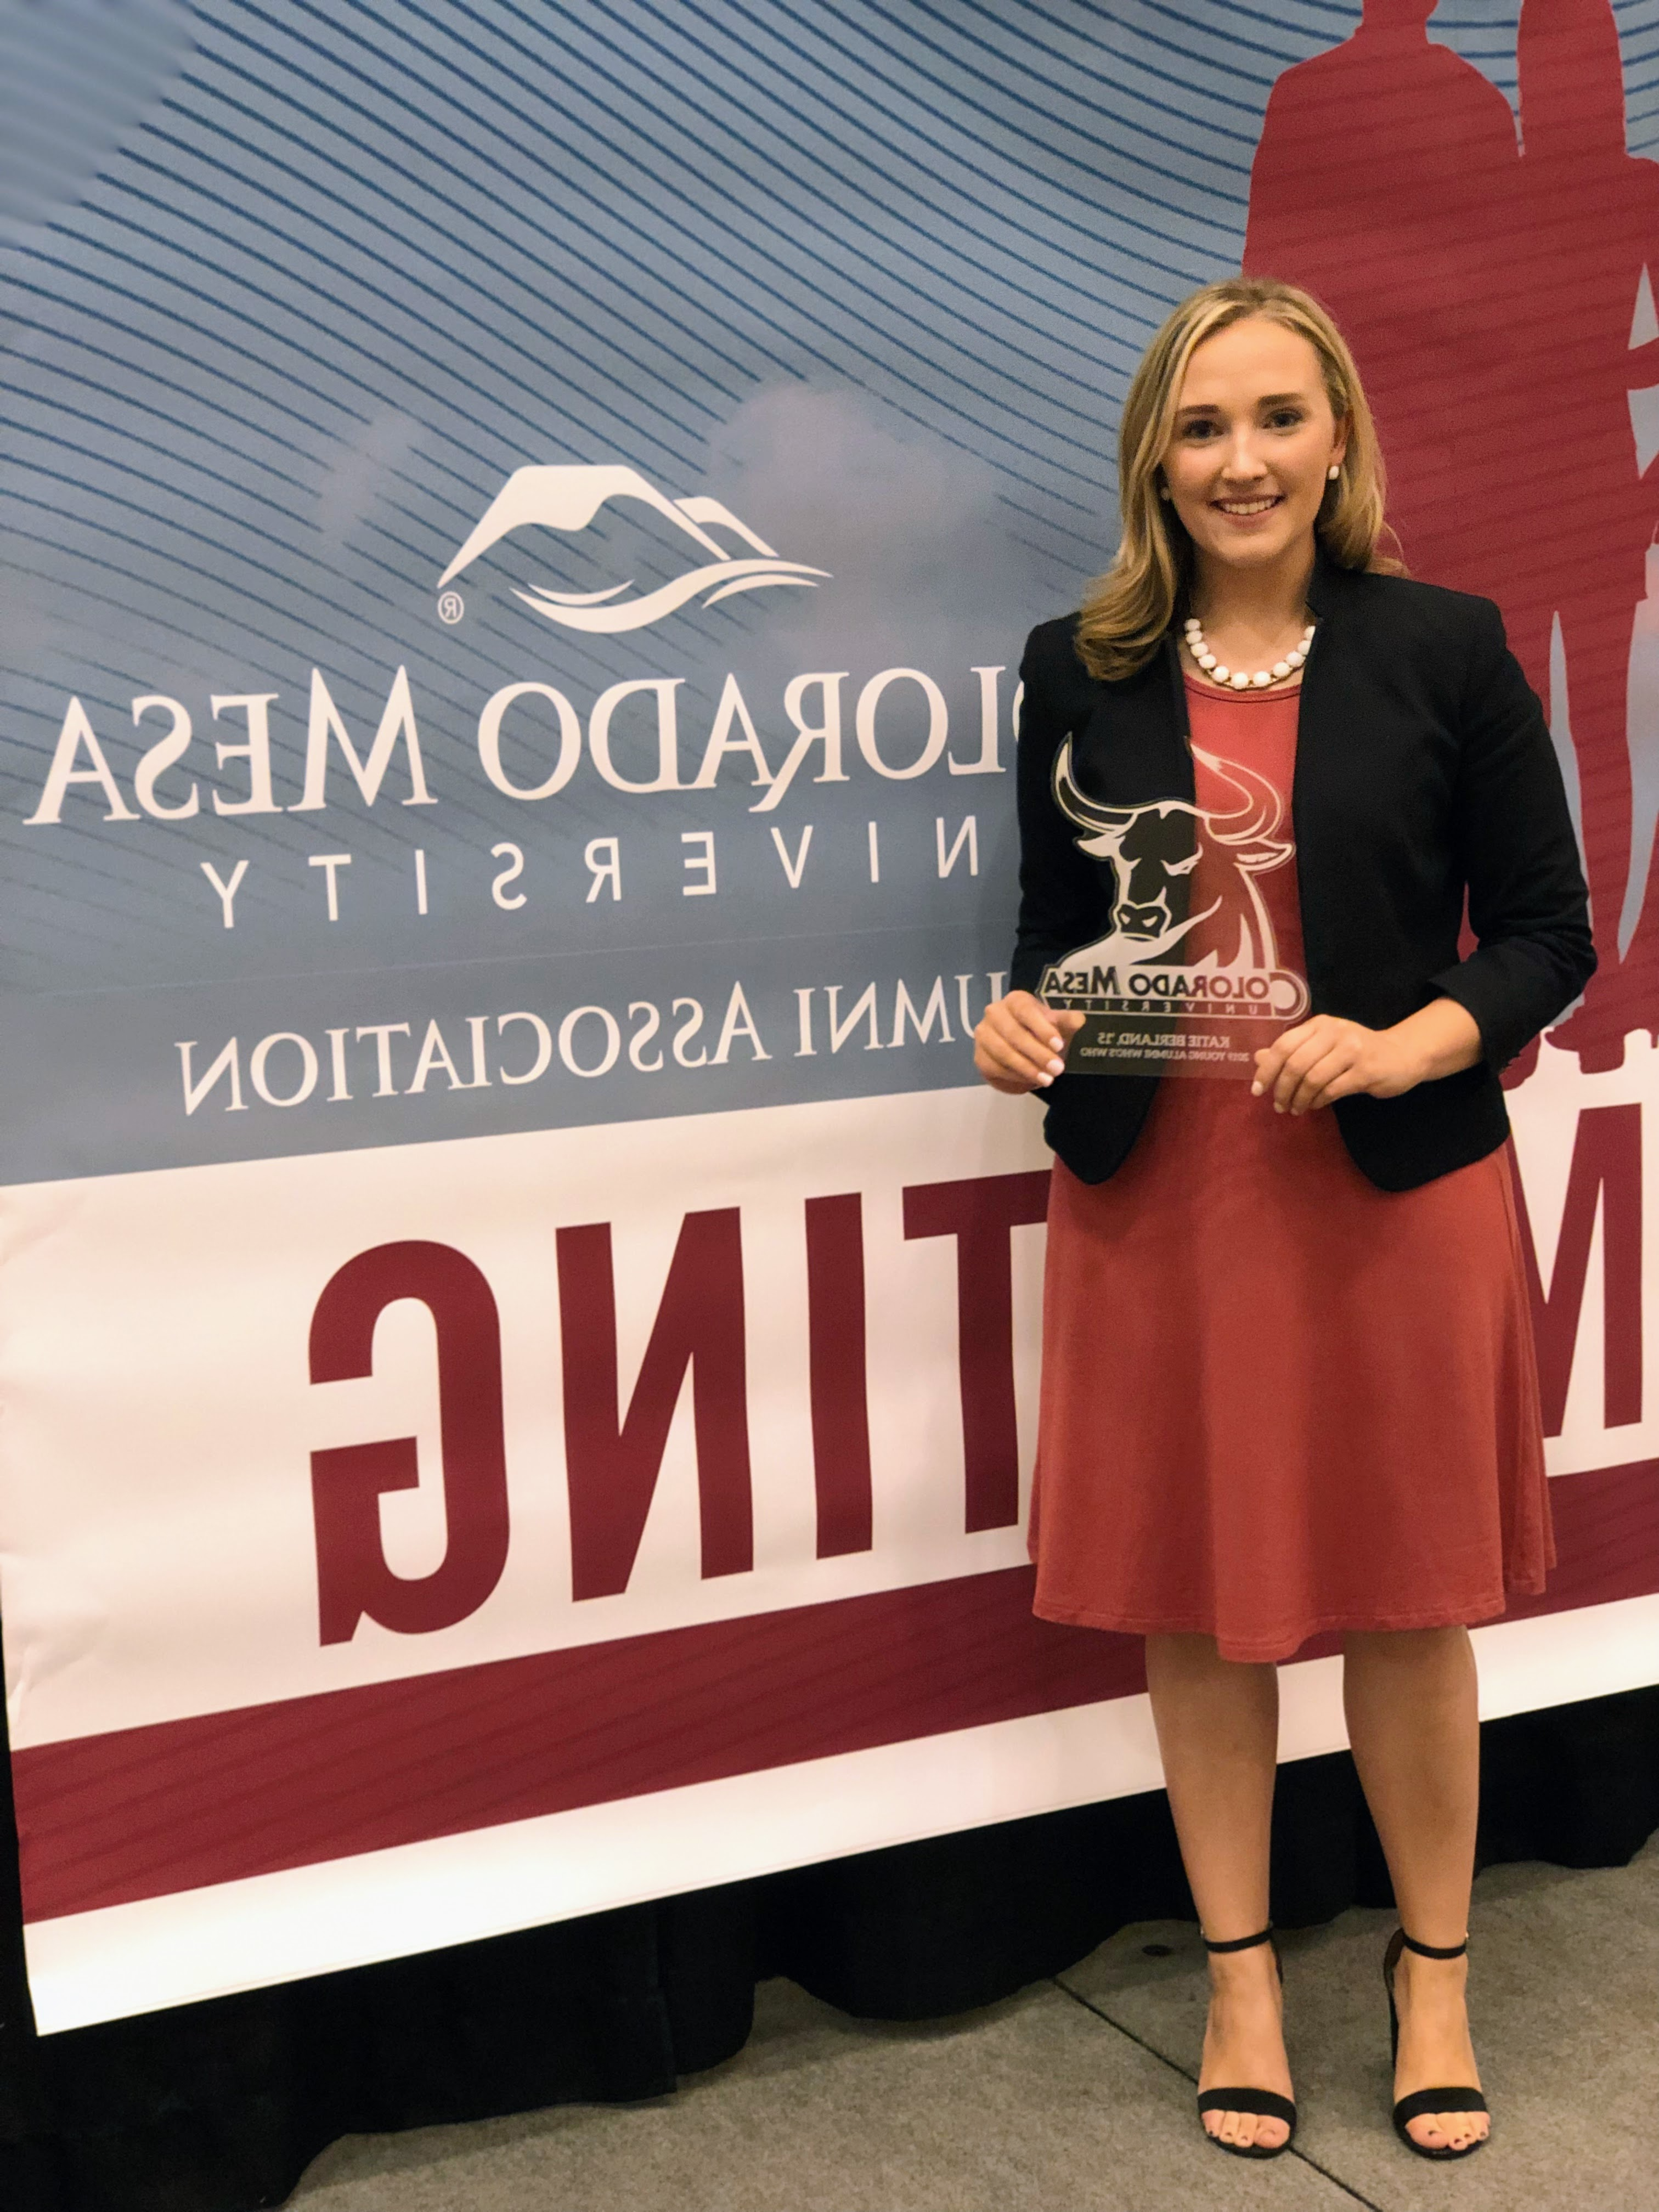 凯蒂在2019年获得了CMU校友会名人奖